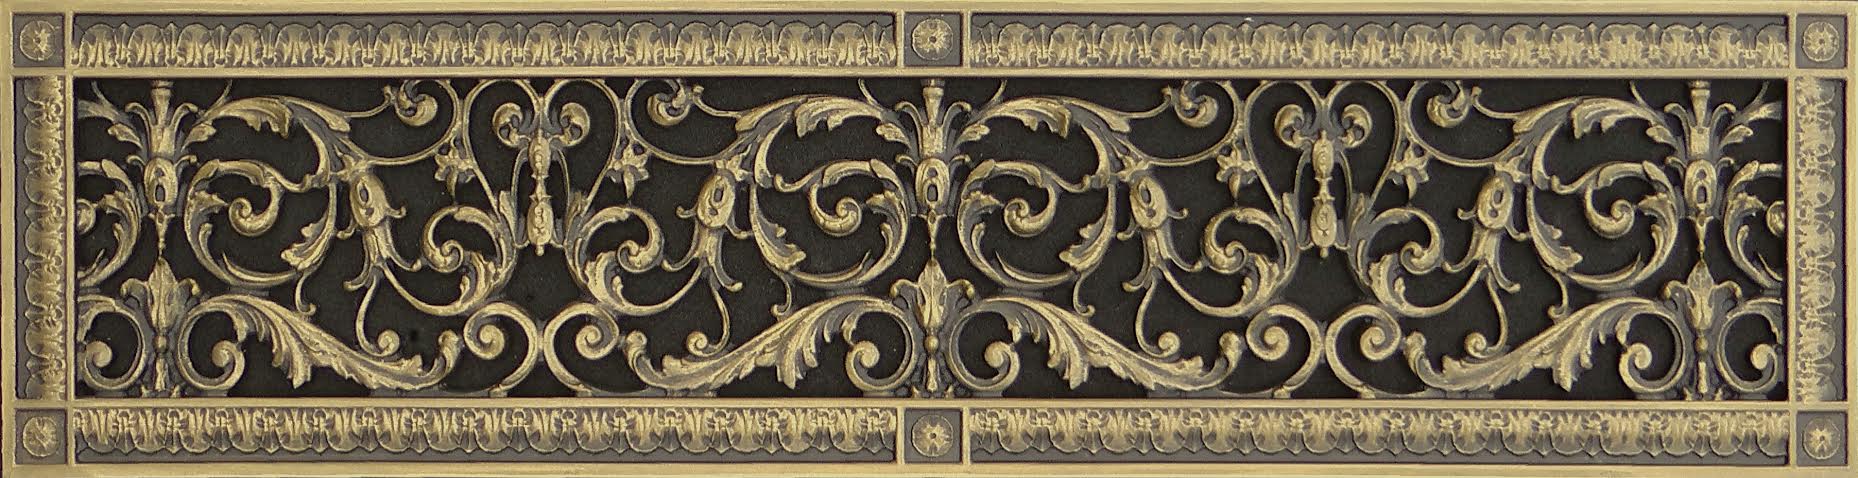 Louis XIV decorative vent cover 6x30 Antique Brass